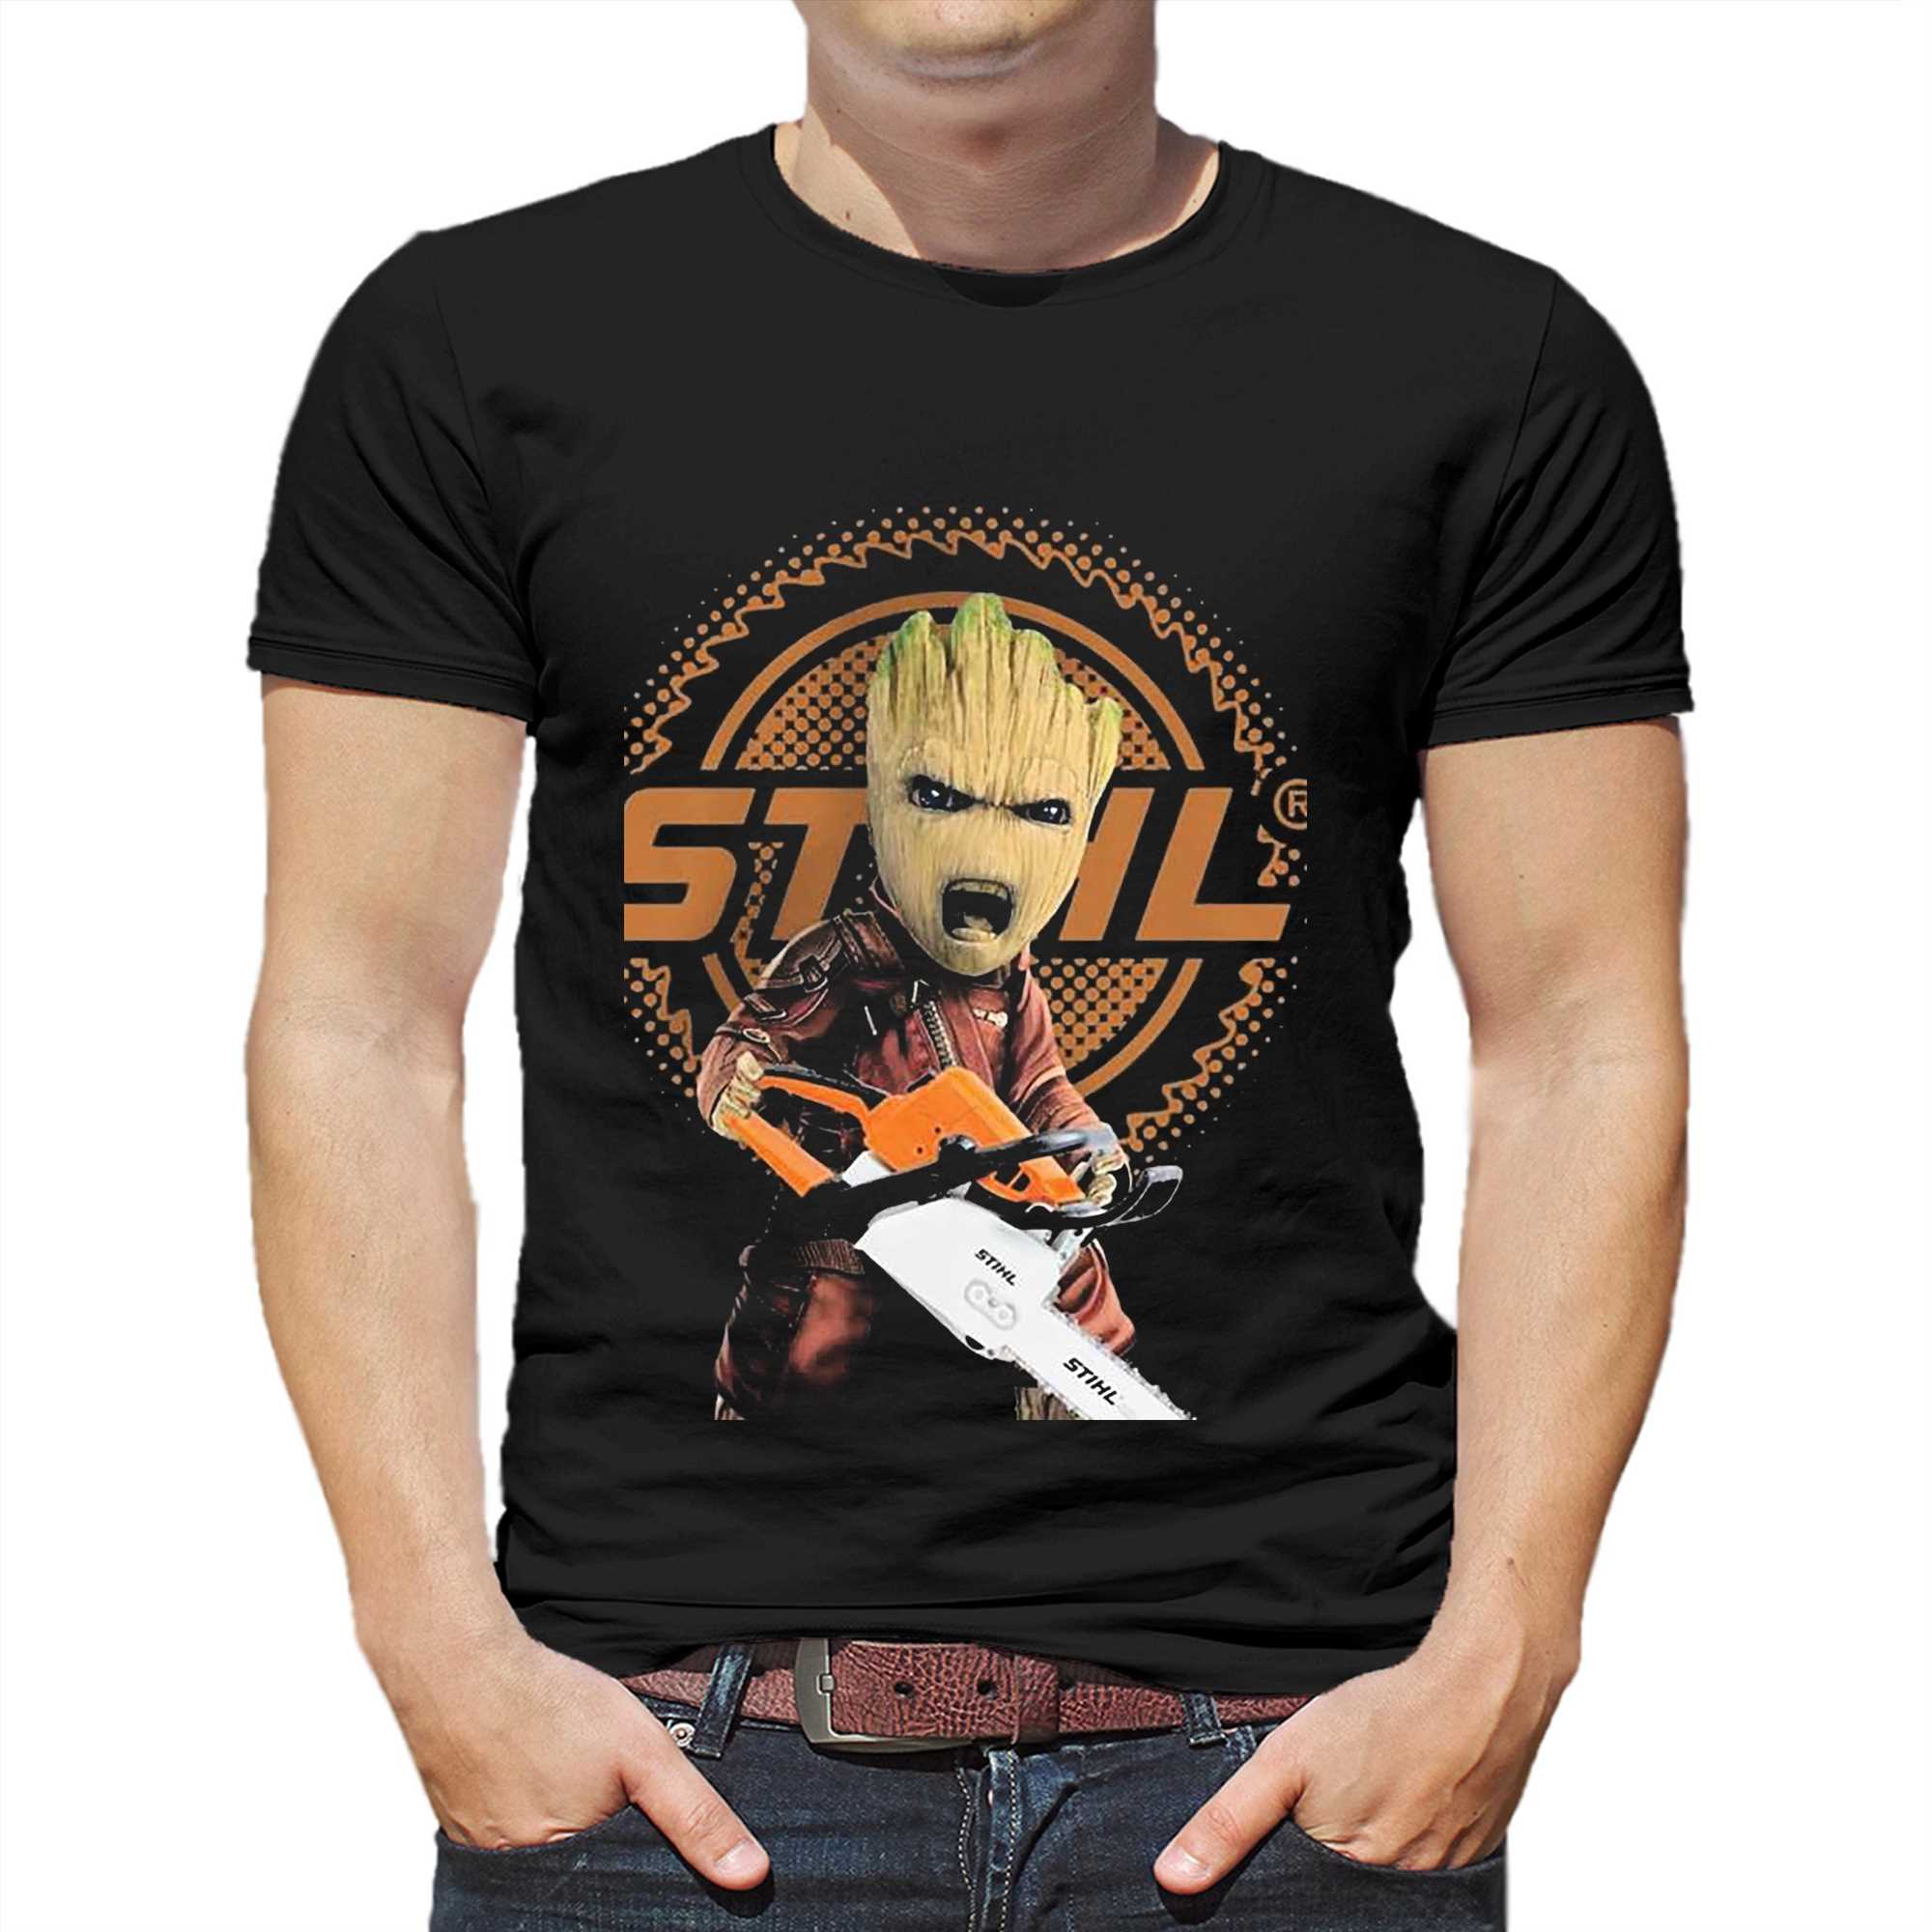 Groot And Stihl Logo Shirt - Shibtee Clothing